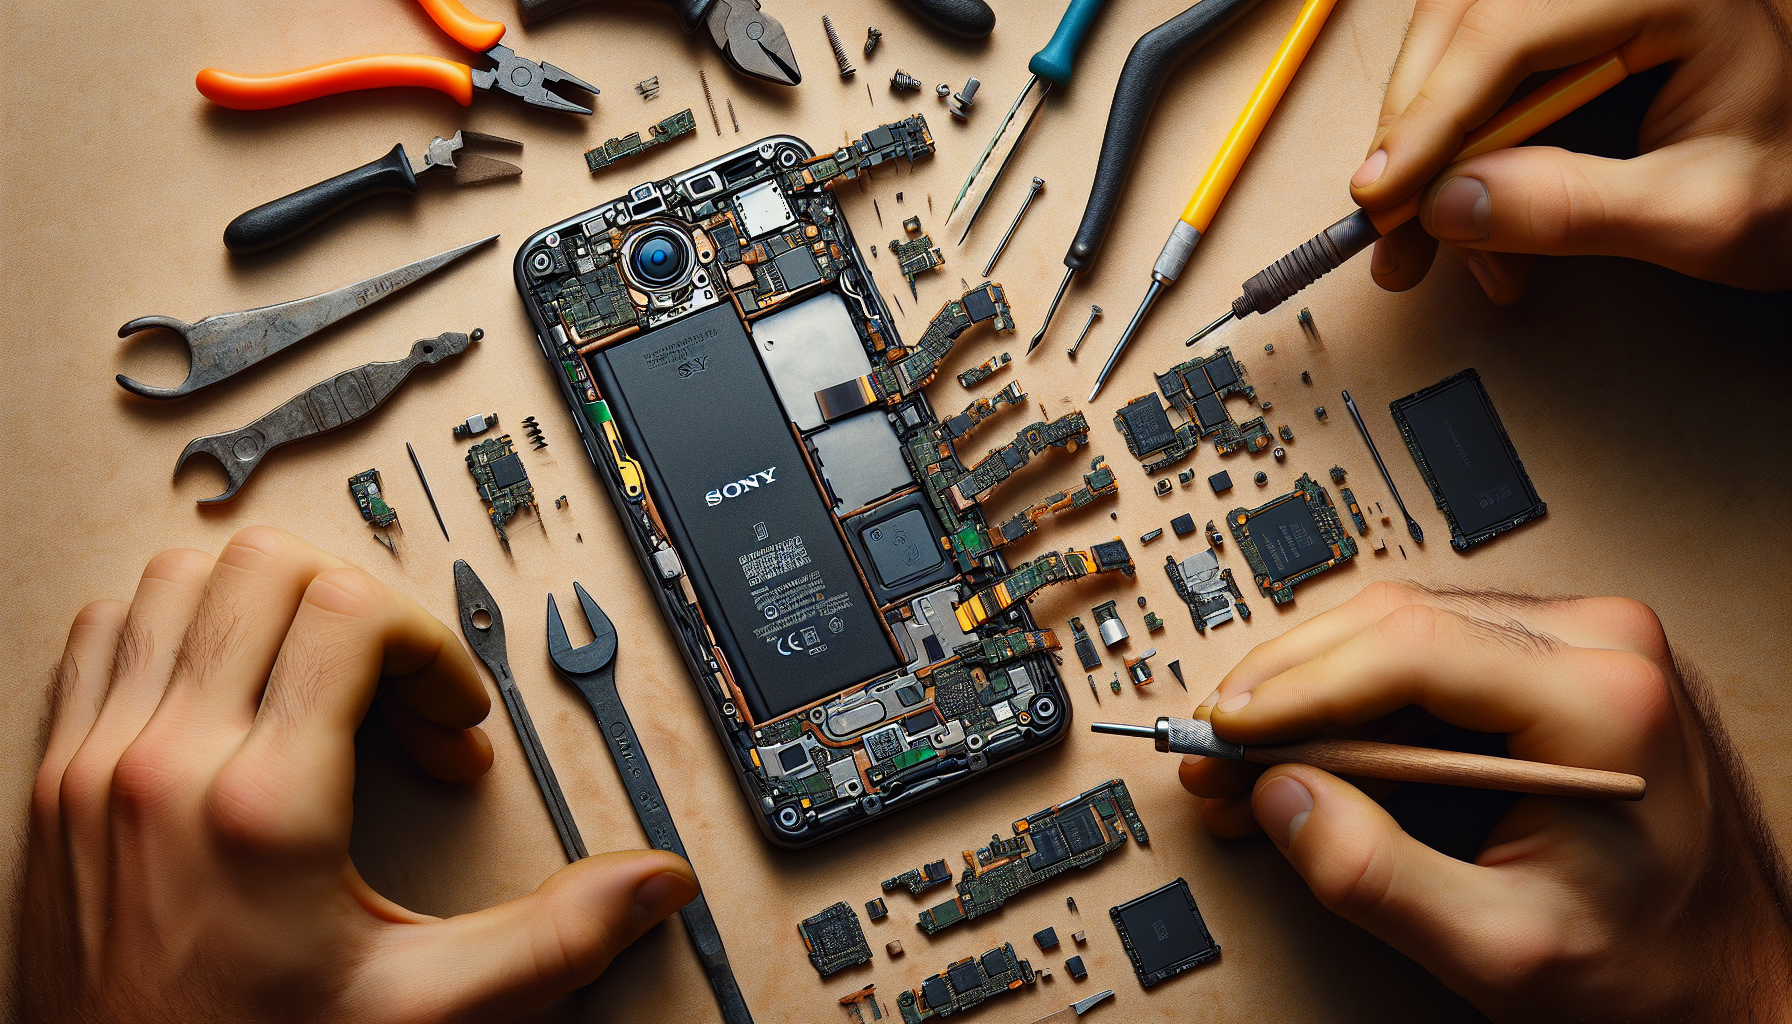 confiez la réparation de l'écran de votre téléphone sony à des experts. profitez d'un service de réparation professionnel pour votre téléphone sony et retrouvez un écran comme neuf.